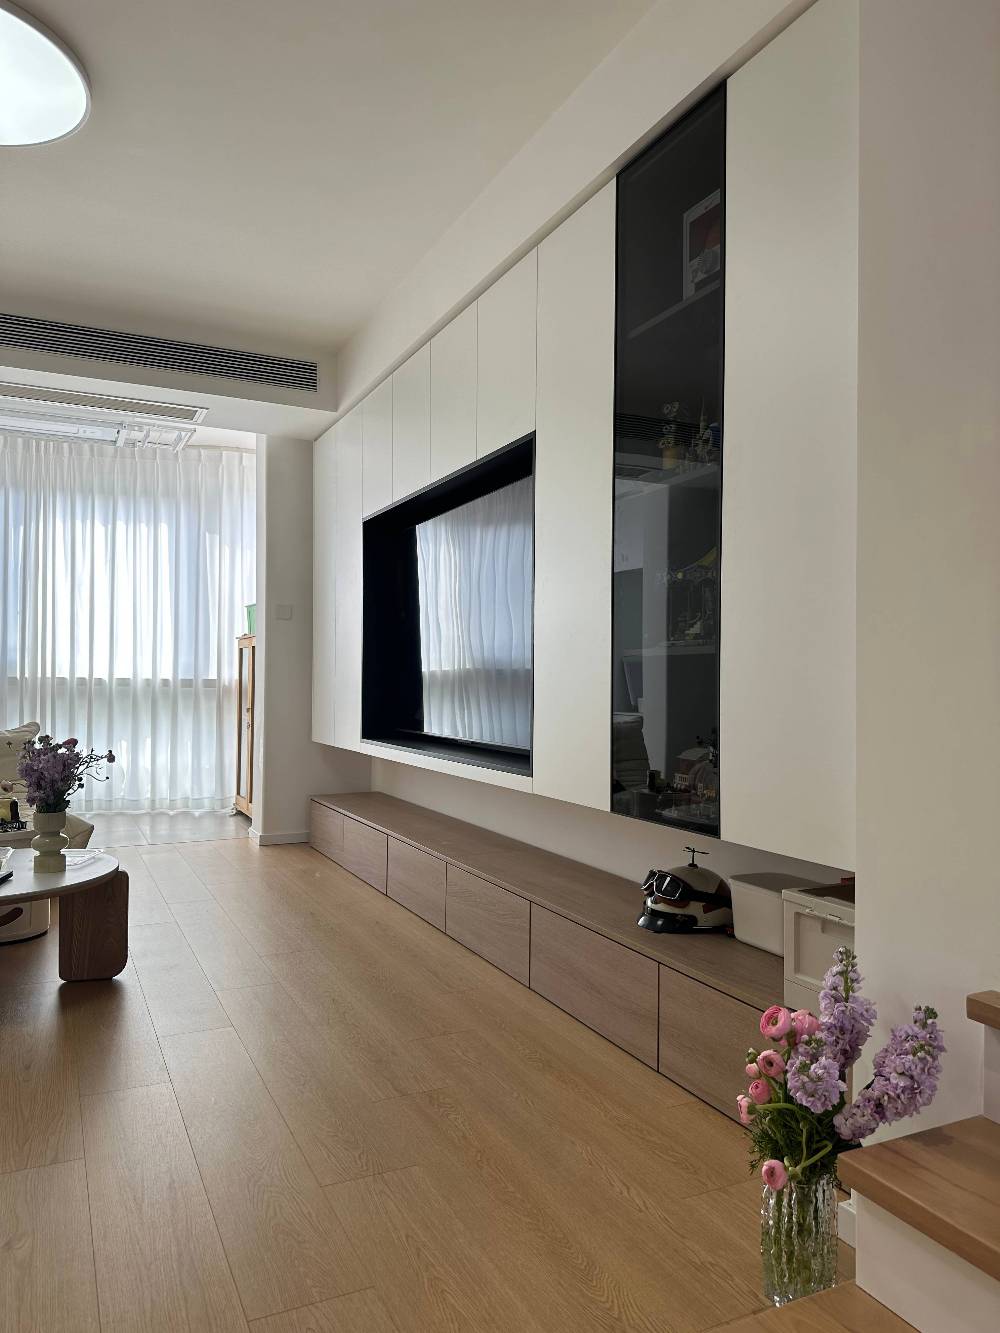 静安区望源公寓110平现代简约风格复式装修效果图